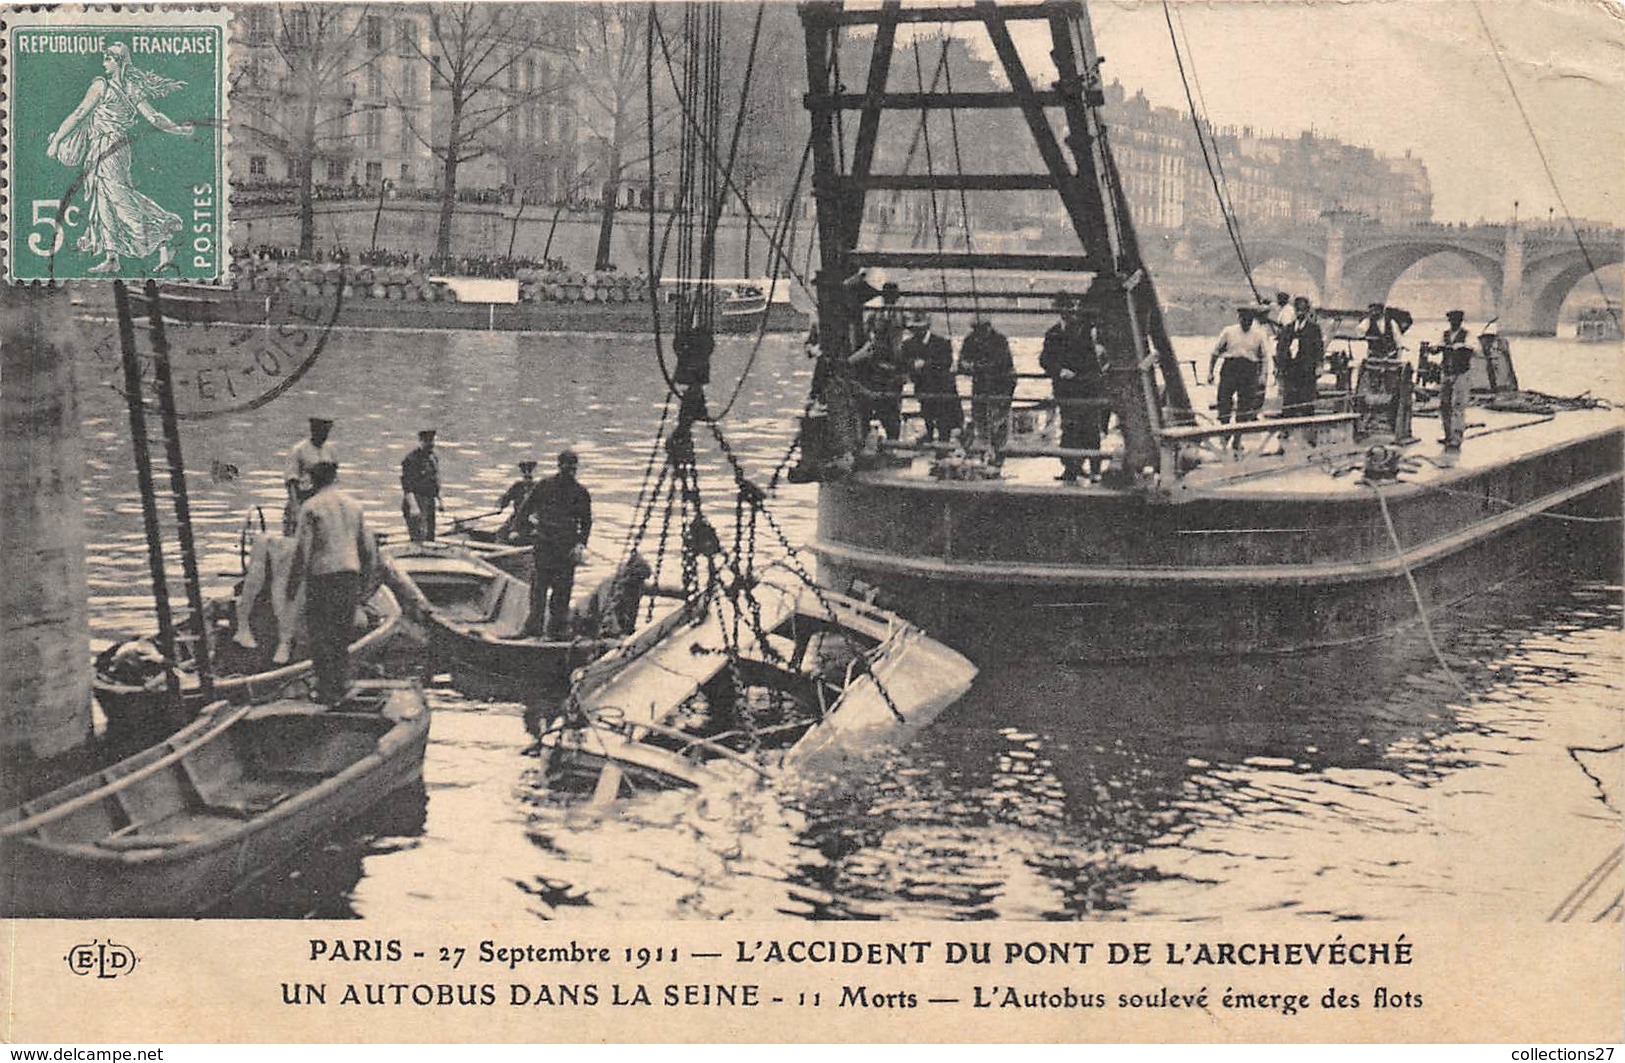 75004-PARIS-PONT DE L'ARCHECHEVE, 27 SEPTEMBRE 1911, UN AUTOBUS DANS LA SEINE 11 MORTS - Arrondissement: 04